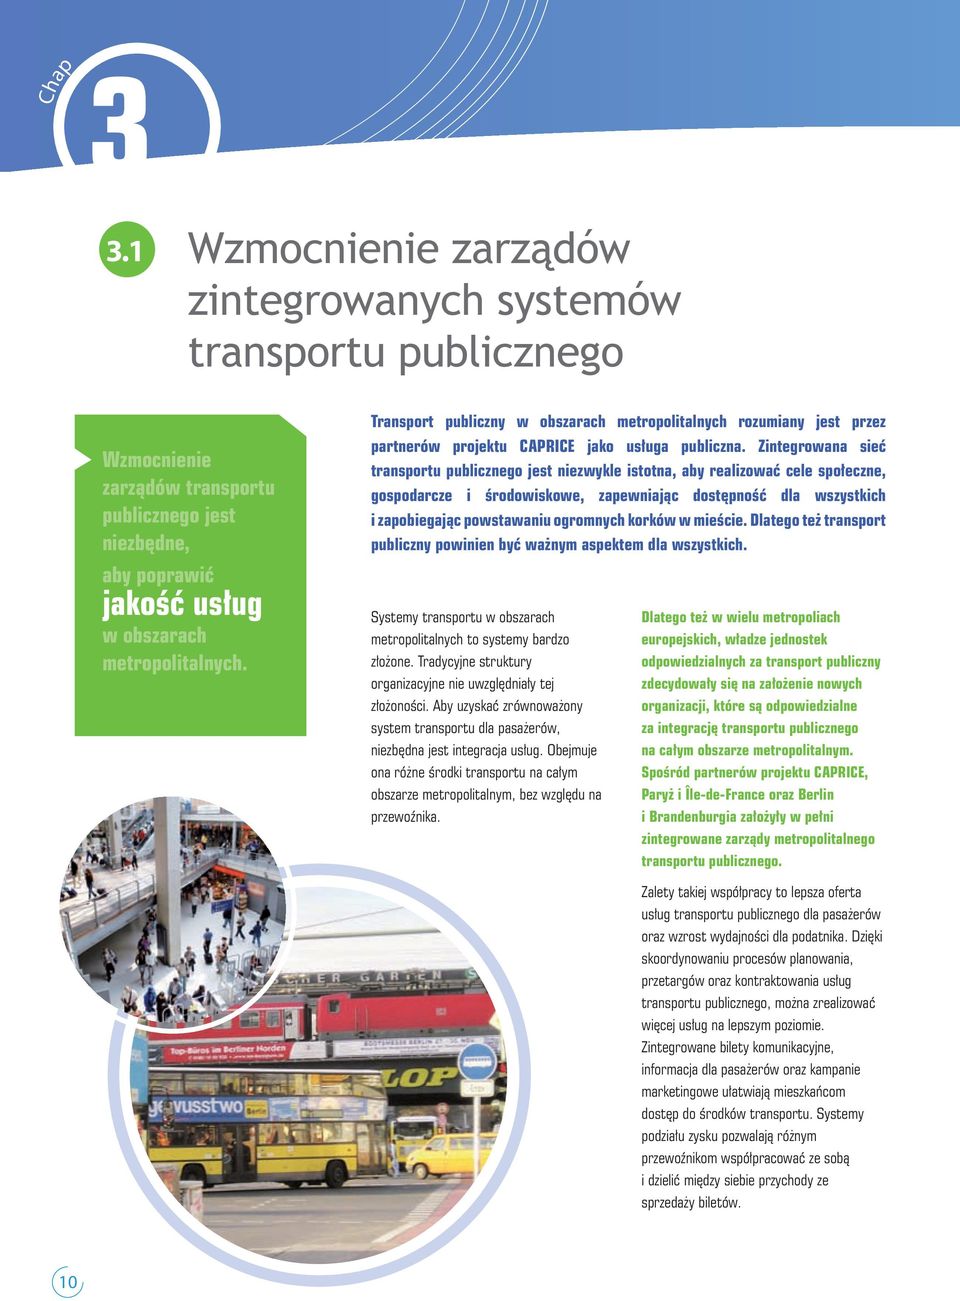 Zintegrowana sieć transportu publicznego jest niezwykle istotna, aby realizować cele społeczne, gospodarcze i środowiskowe, zapewniając dostępność dla wszystkich i zapobiegając powstawaniu ogromnych